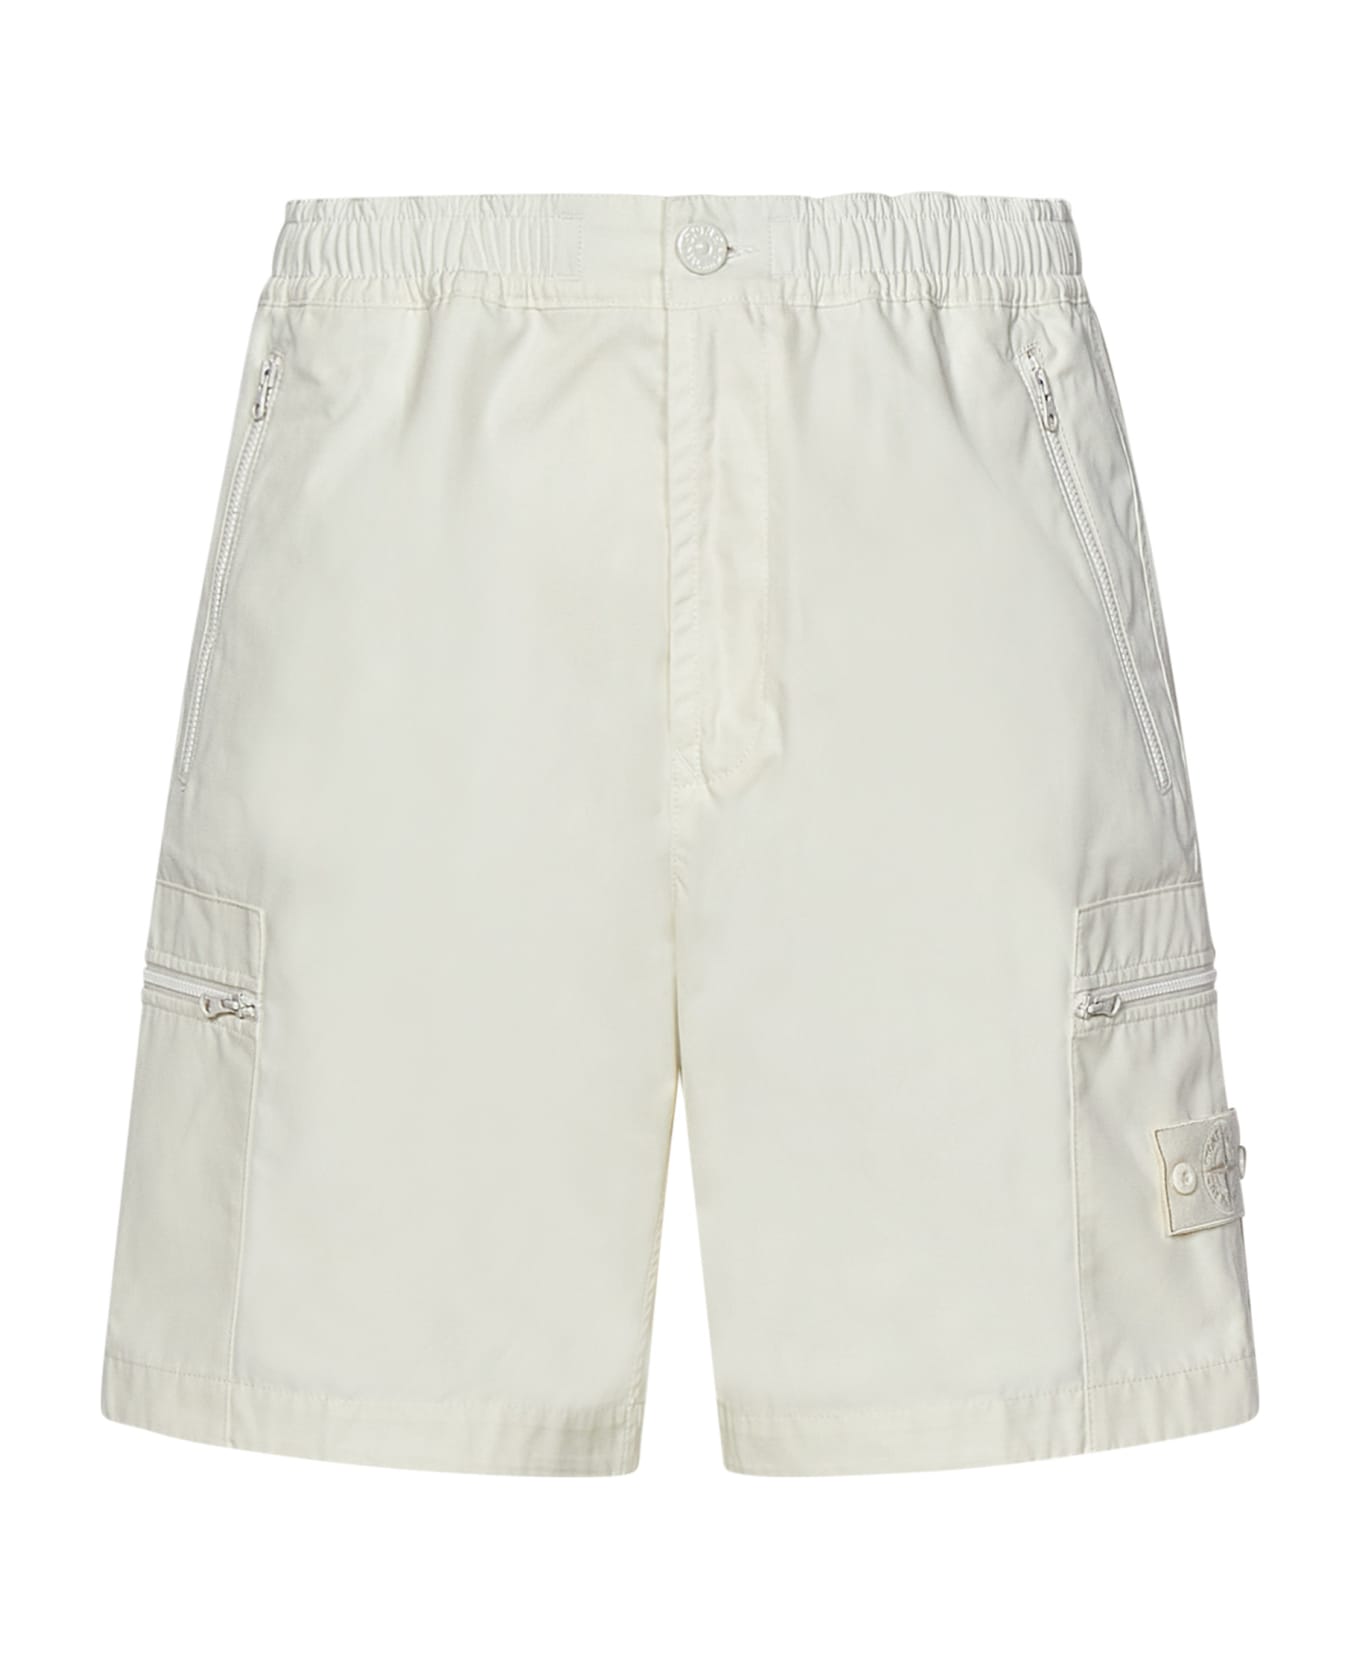 Stone Island Shorts - White